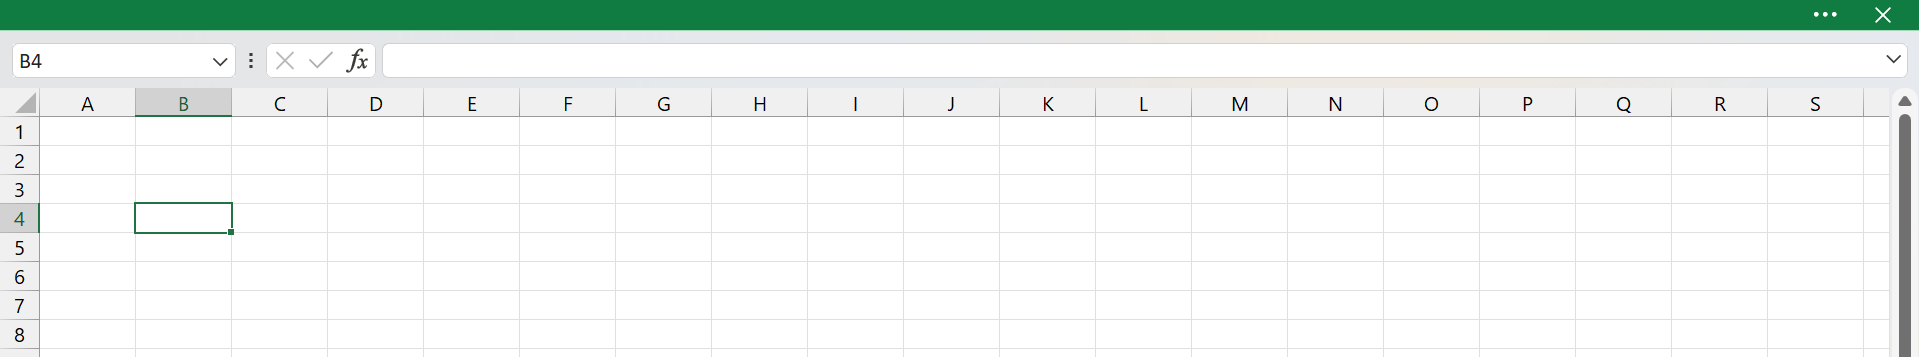 Faixa de Opções no Excel, tela cheia